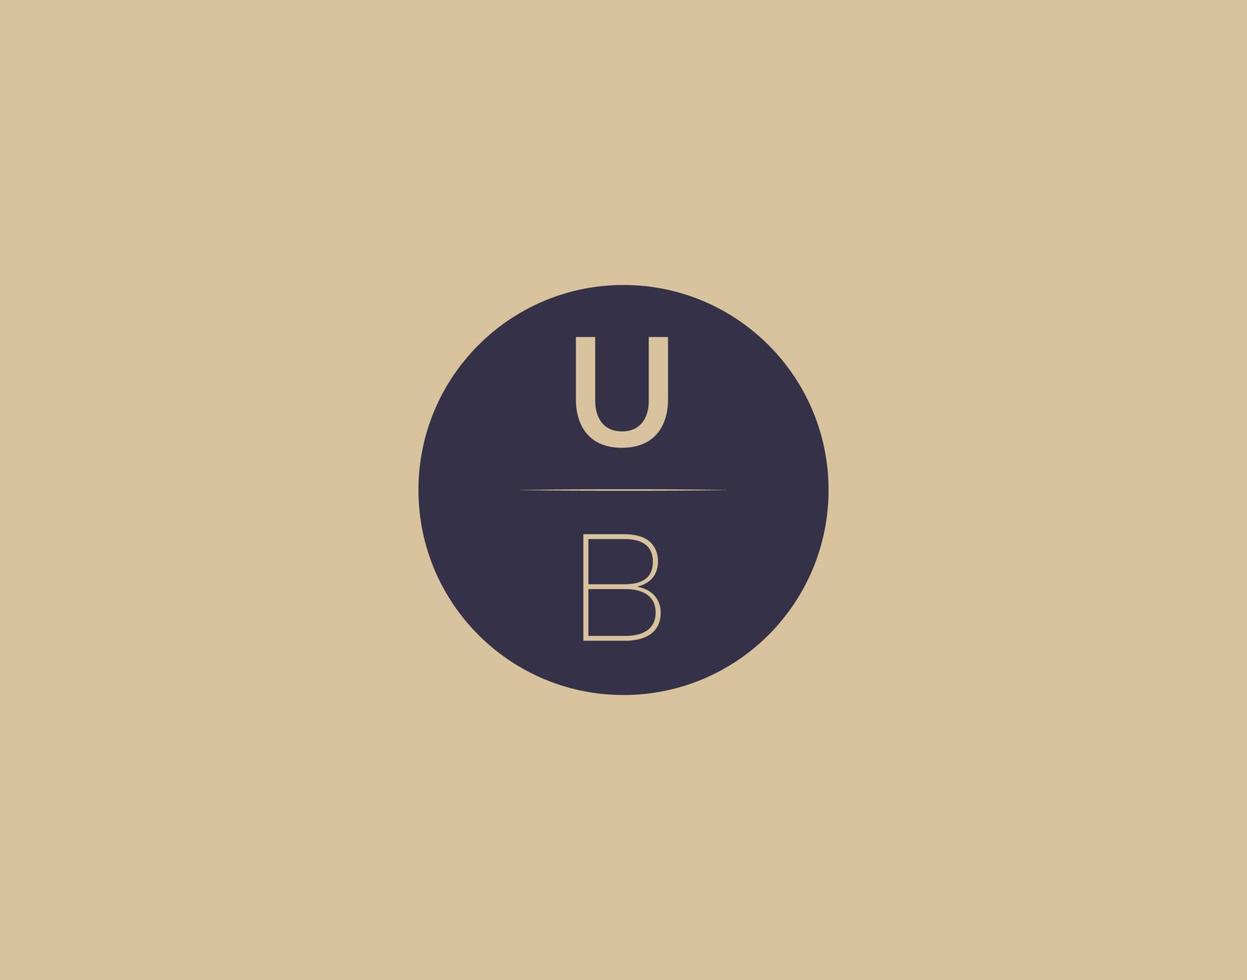 imagens vetoriais de design de logotipo moderno e elegante de letra ub vetor